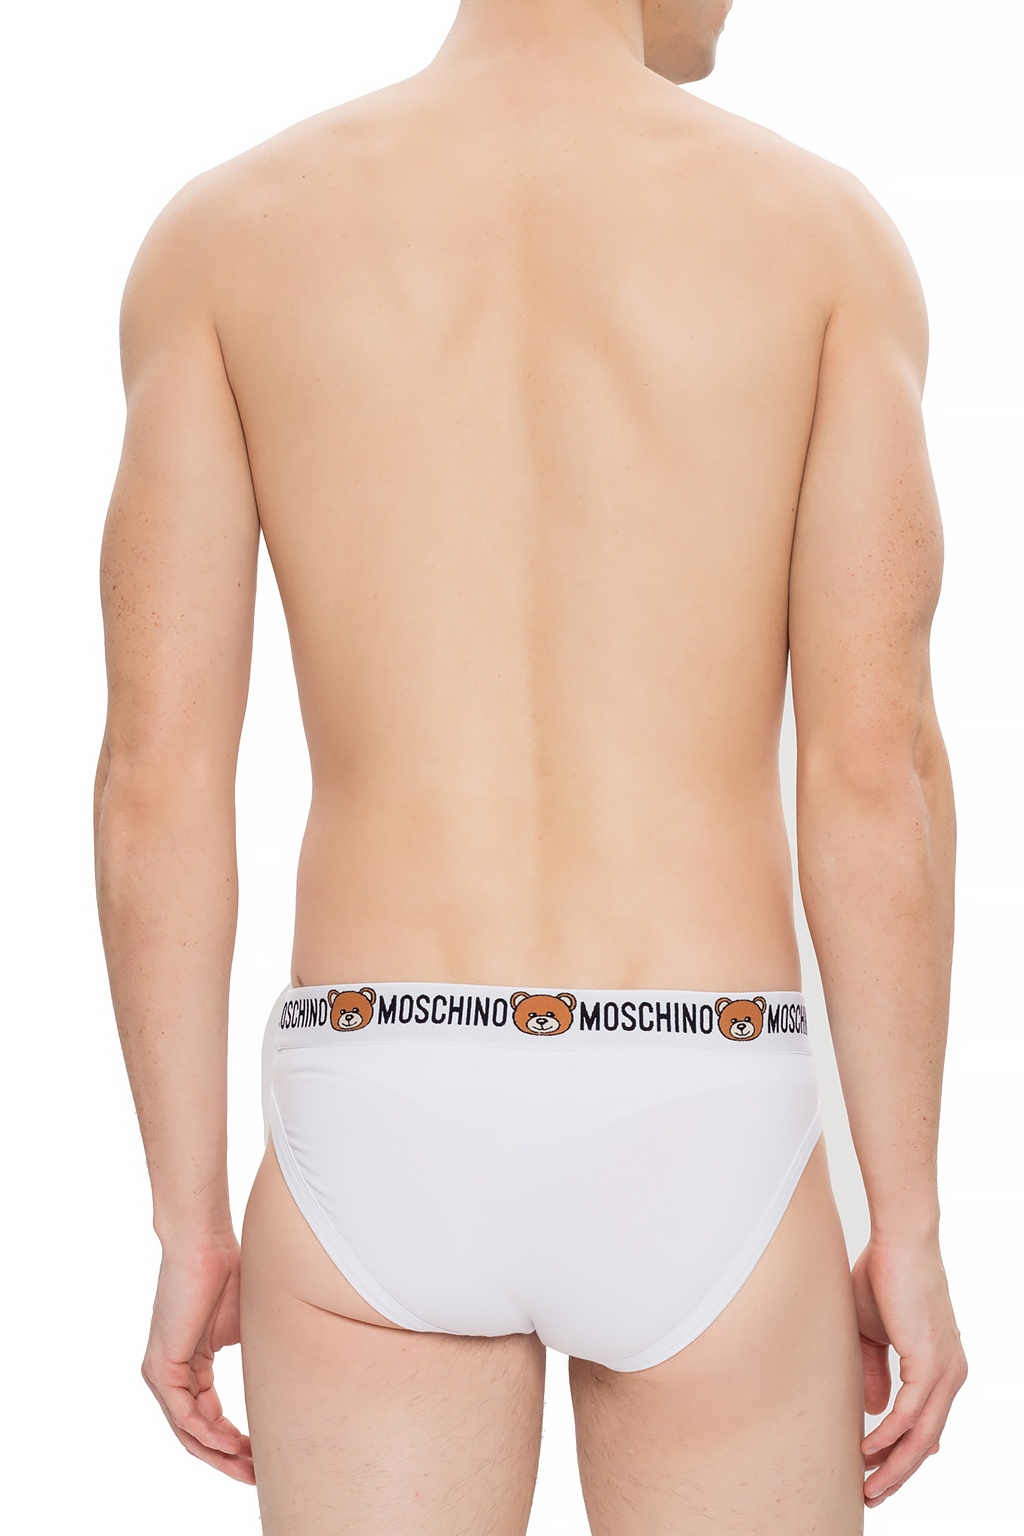 moschino bear underwear